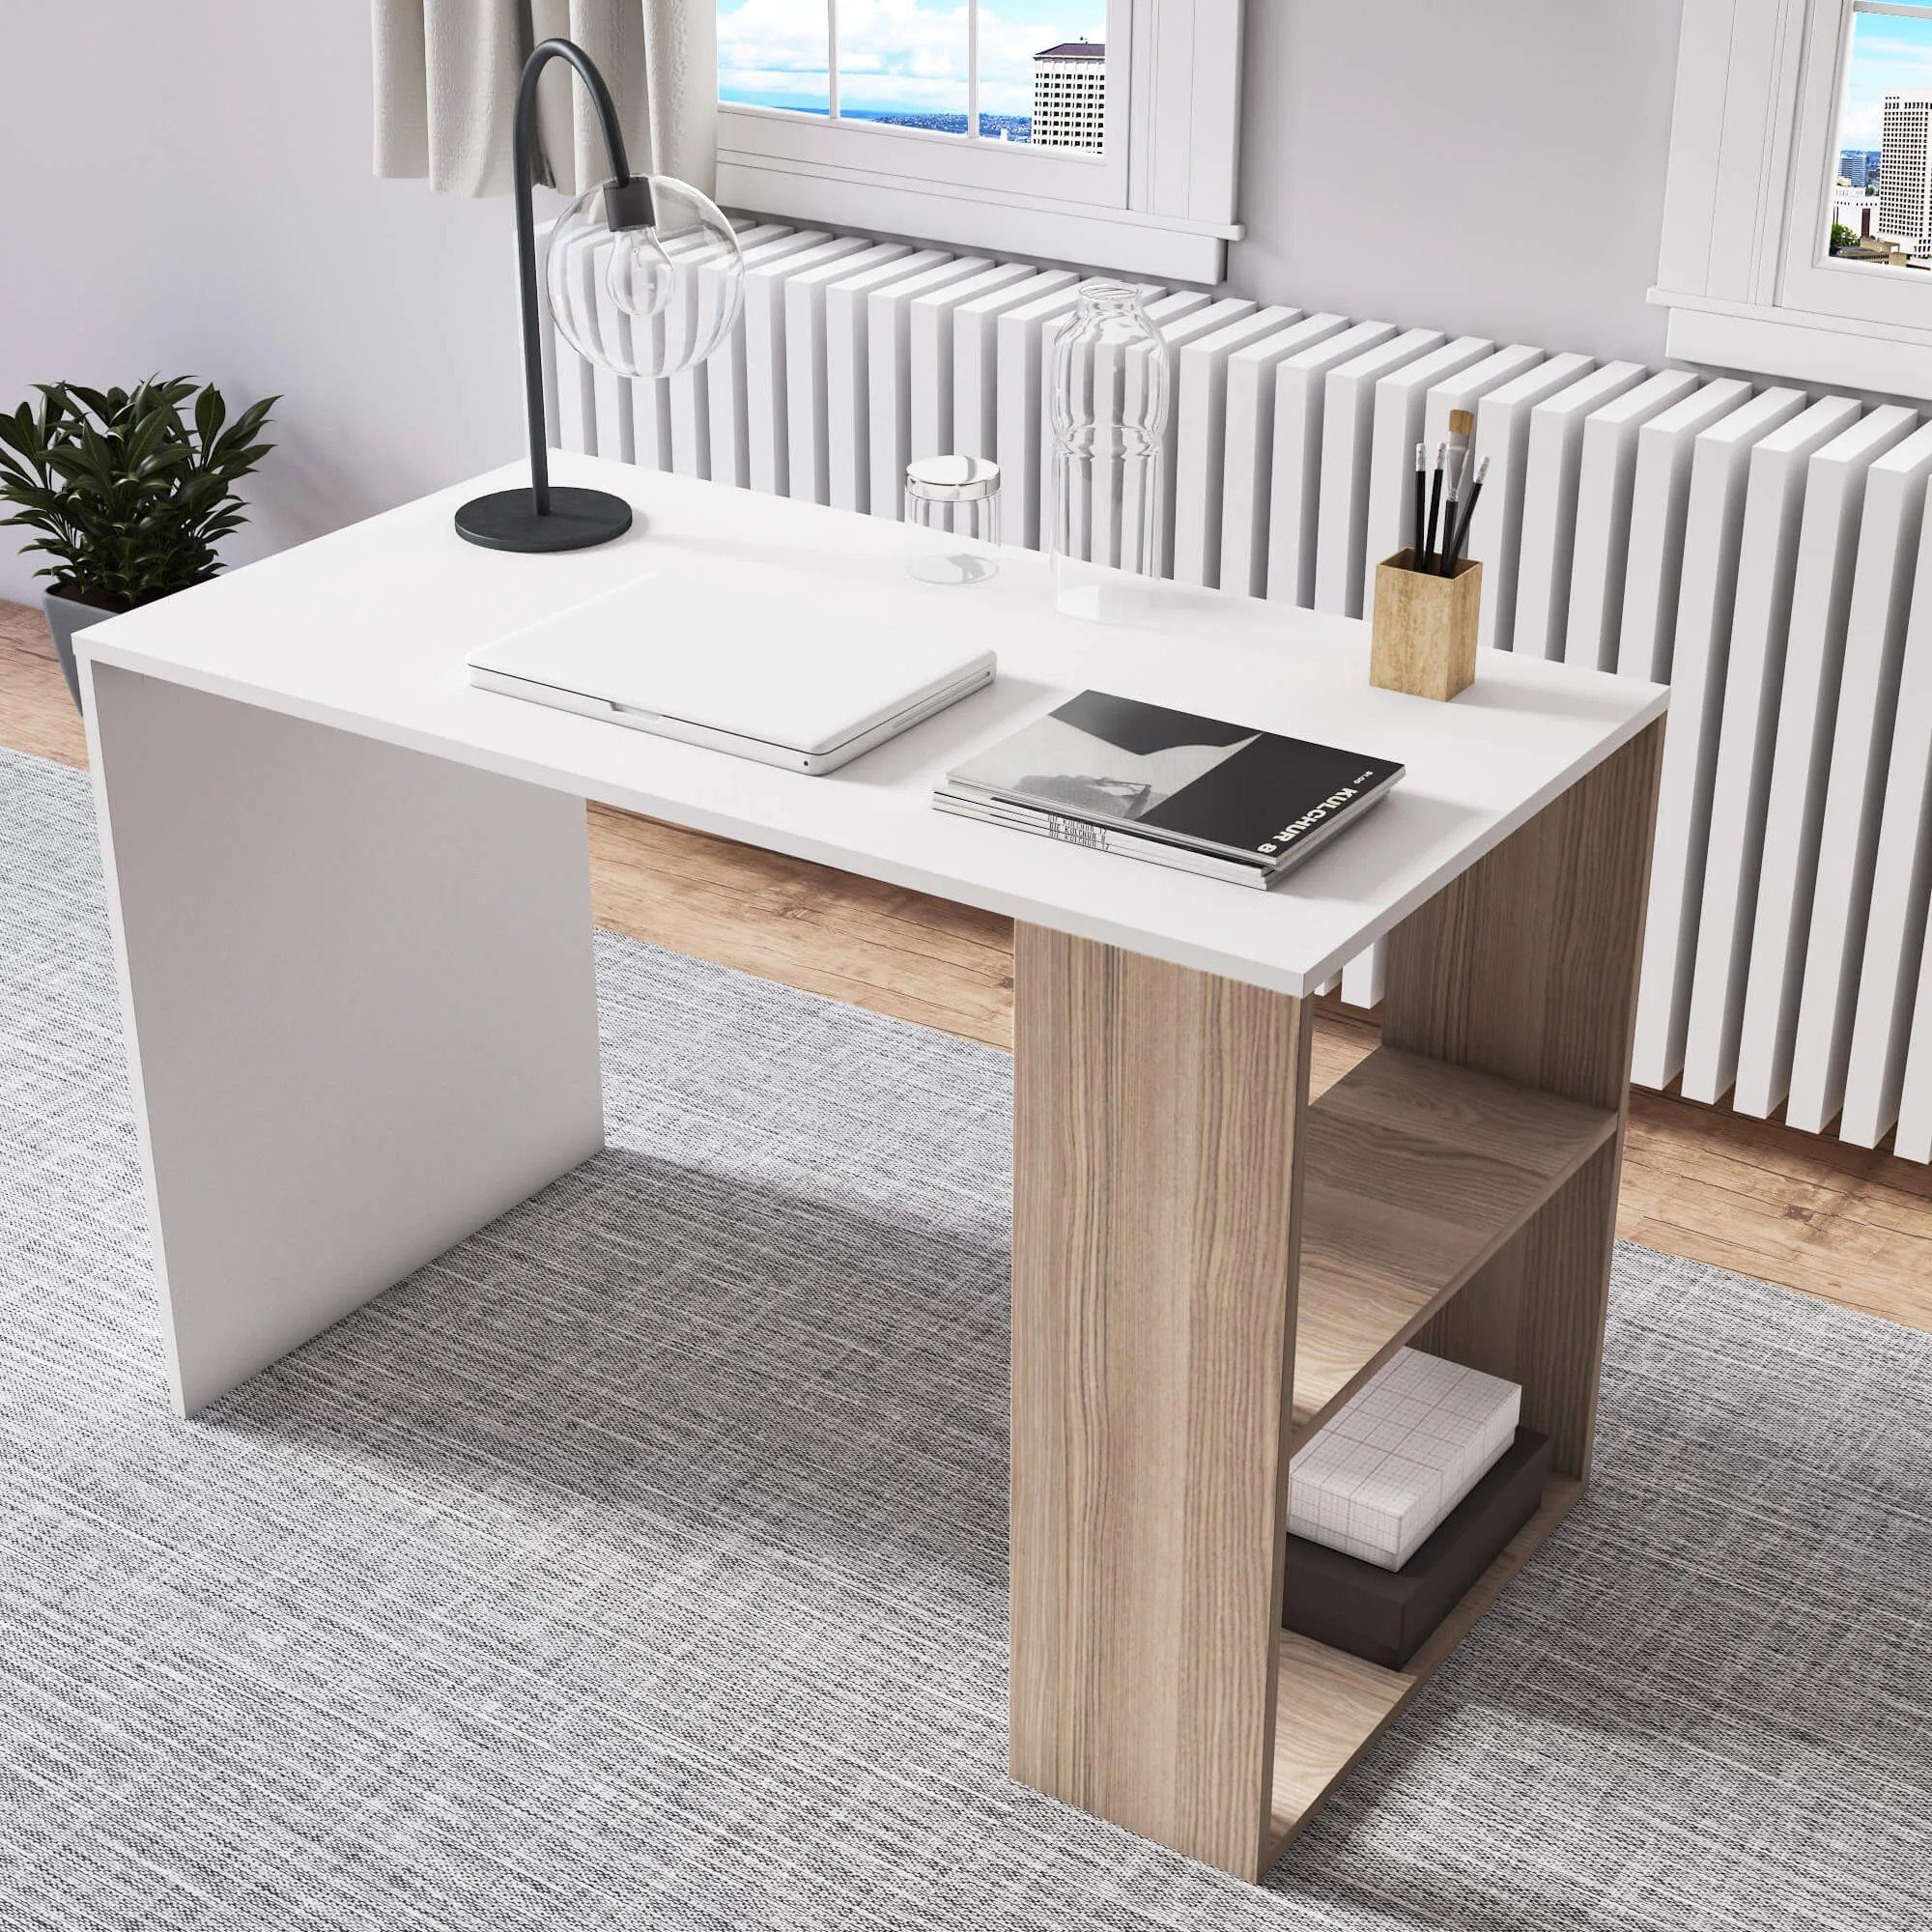 Minimadecor Schreibtisch Minimadecor Schreibtisch & Deserto weiß x76cm 110cm weiß/braun x60cm